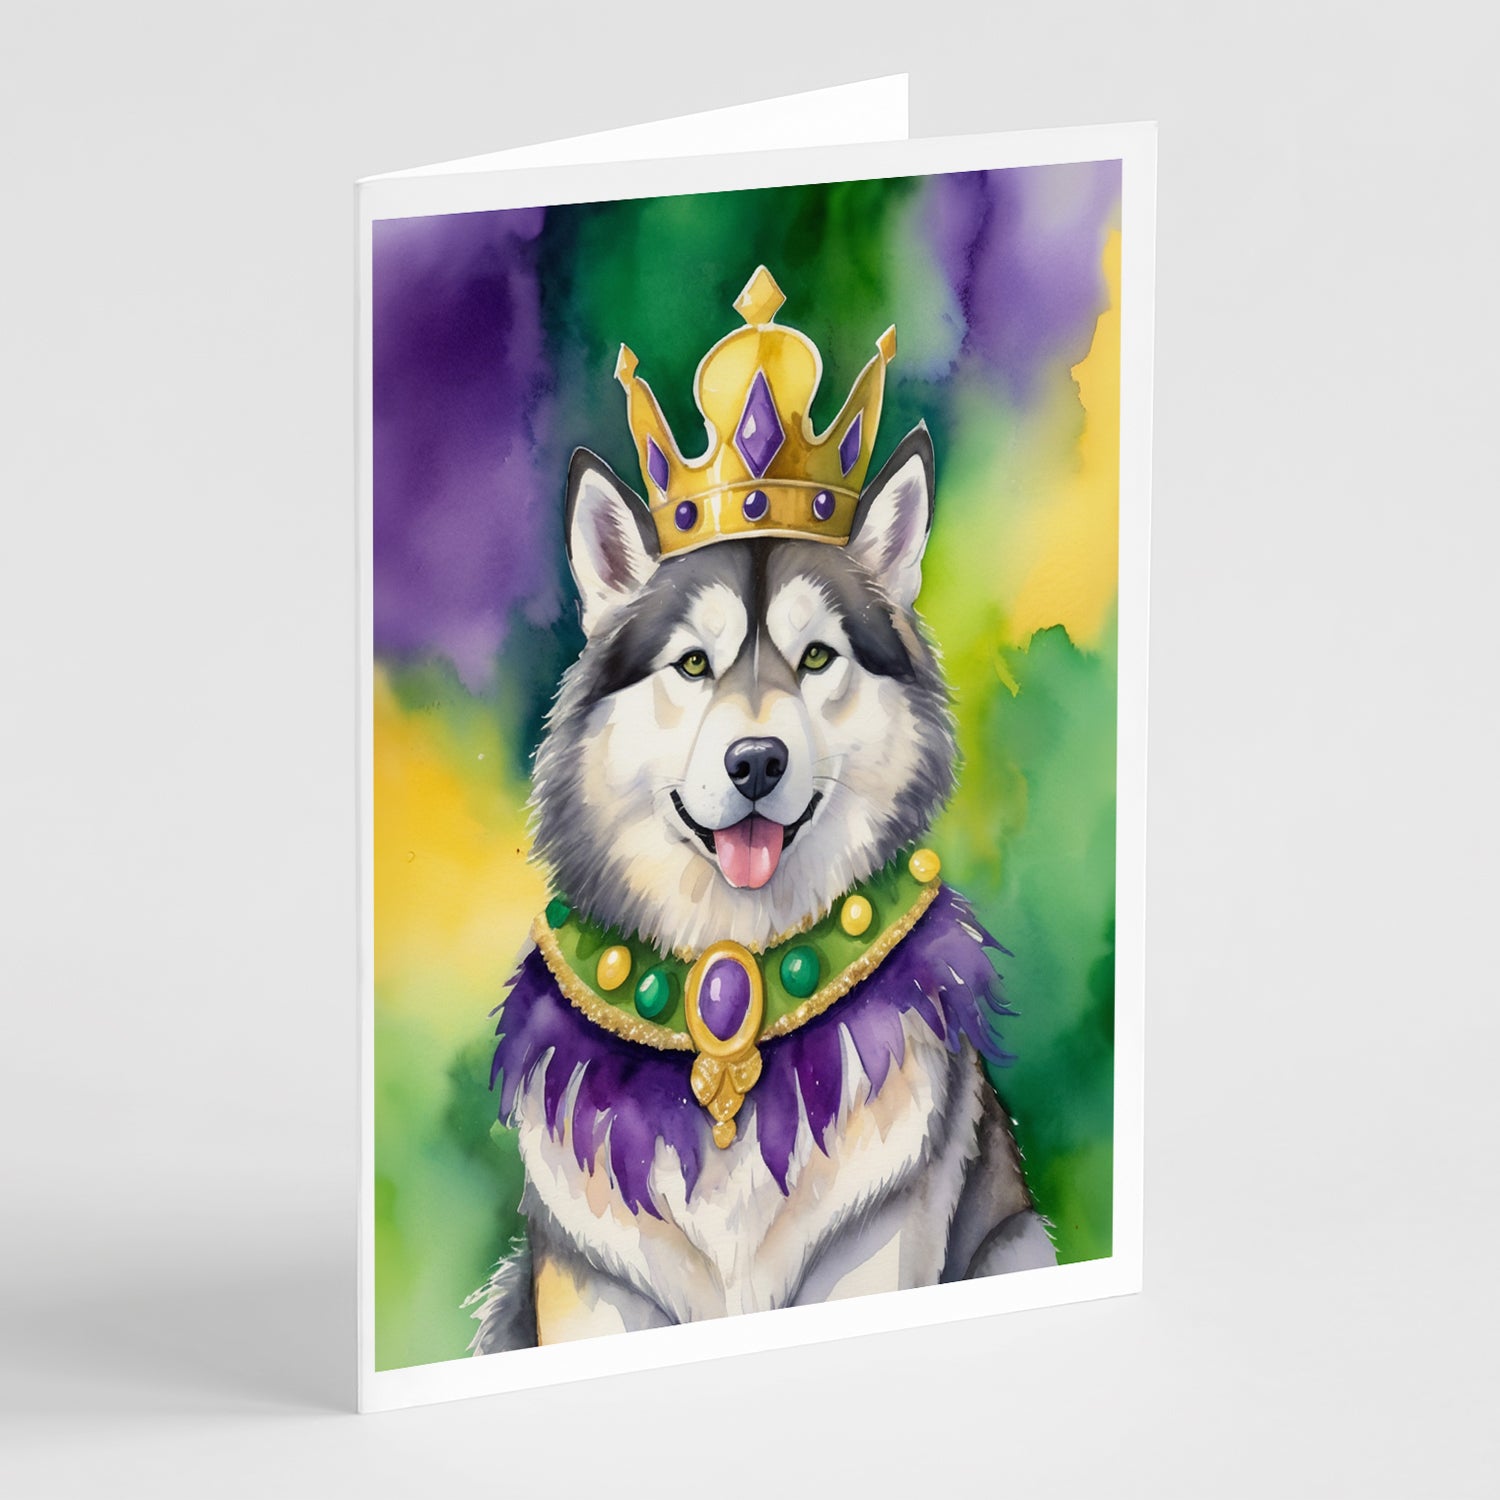 Buy this Alaskan Malamute King of Mardi Gras Greeting Cards Pack of 8